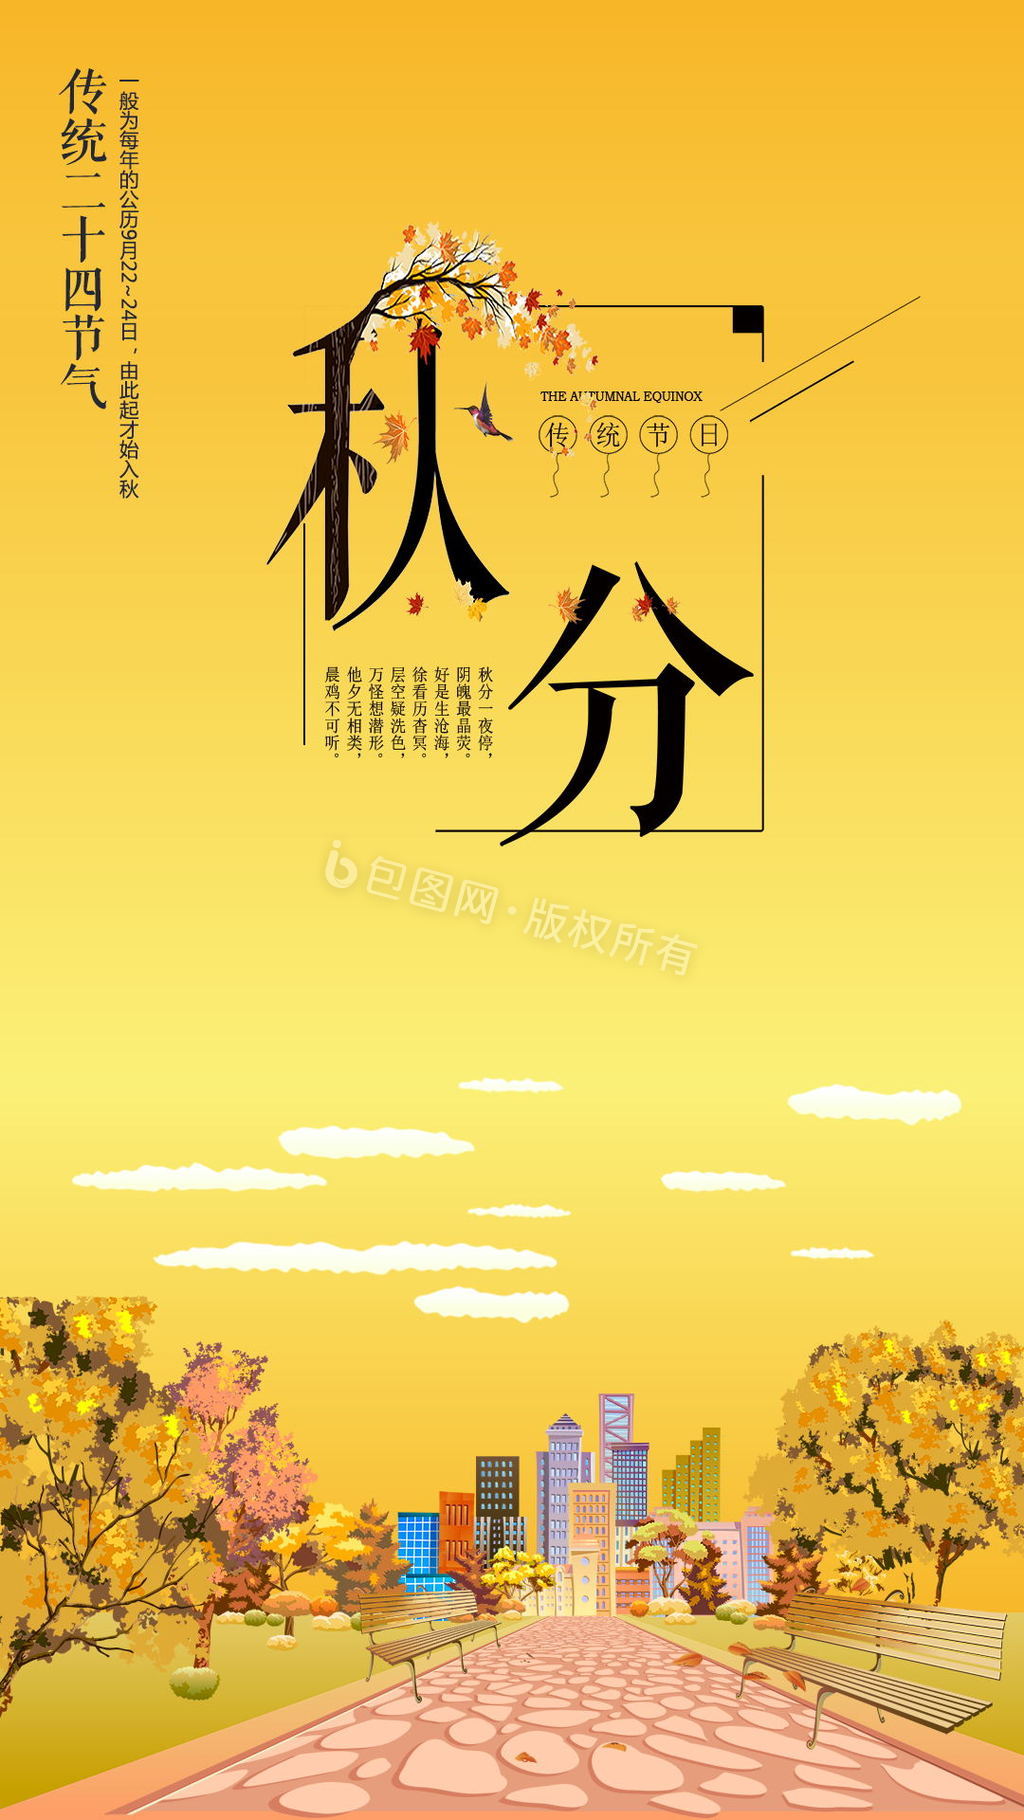 中国二十四节日秋分节日动态海报图片